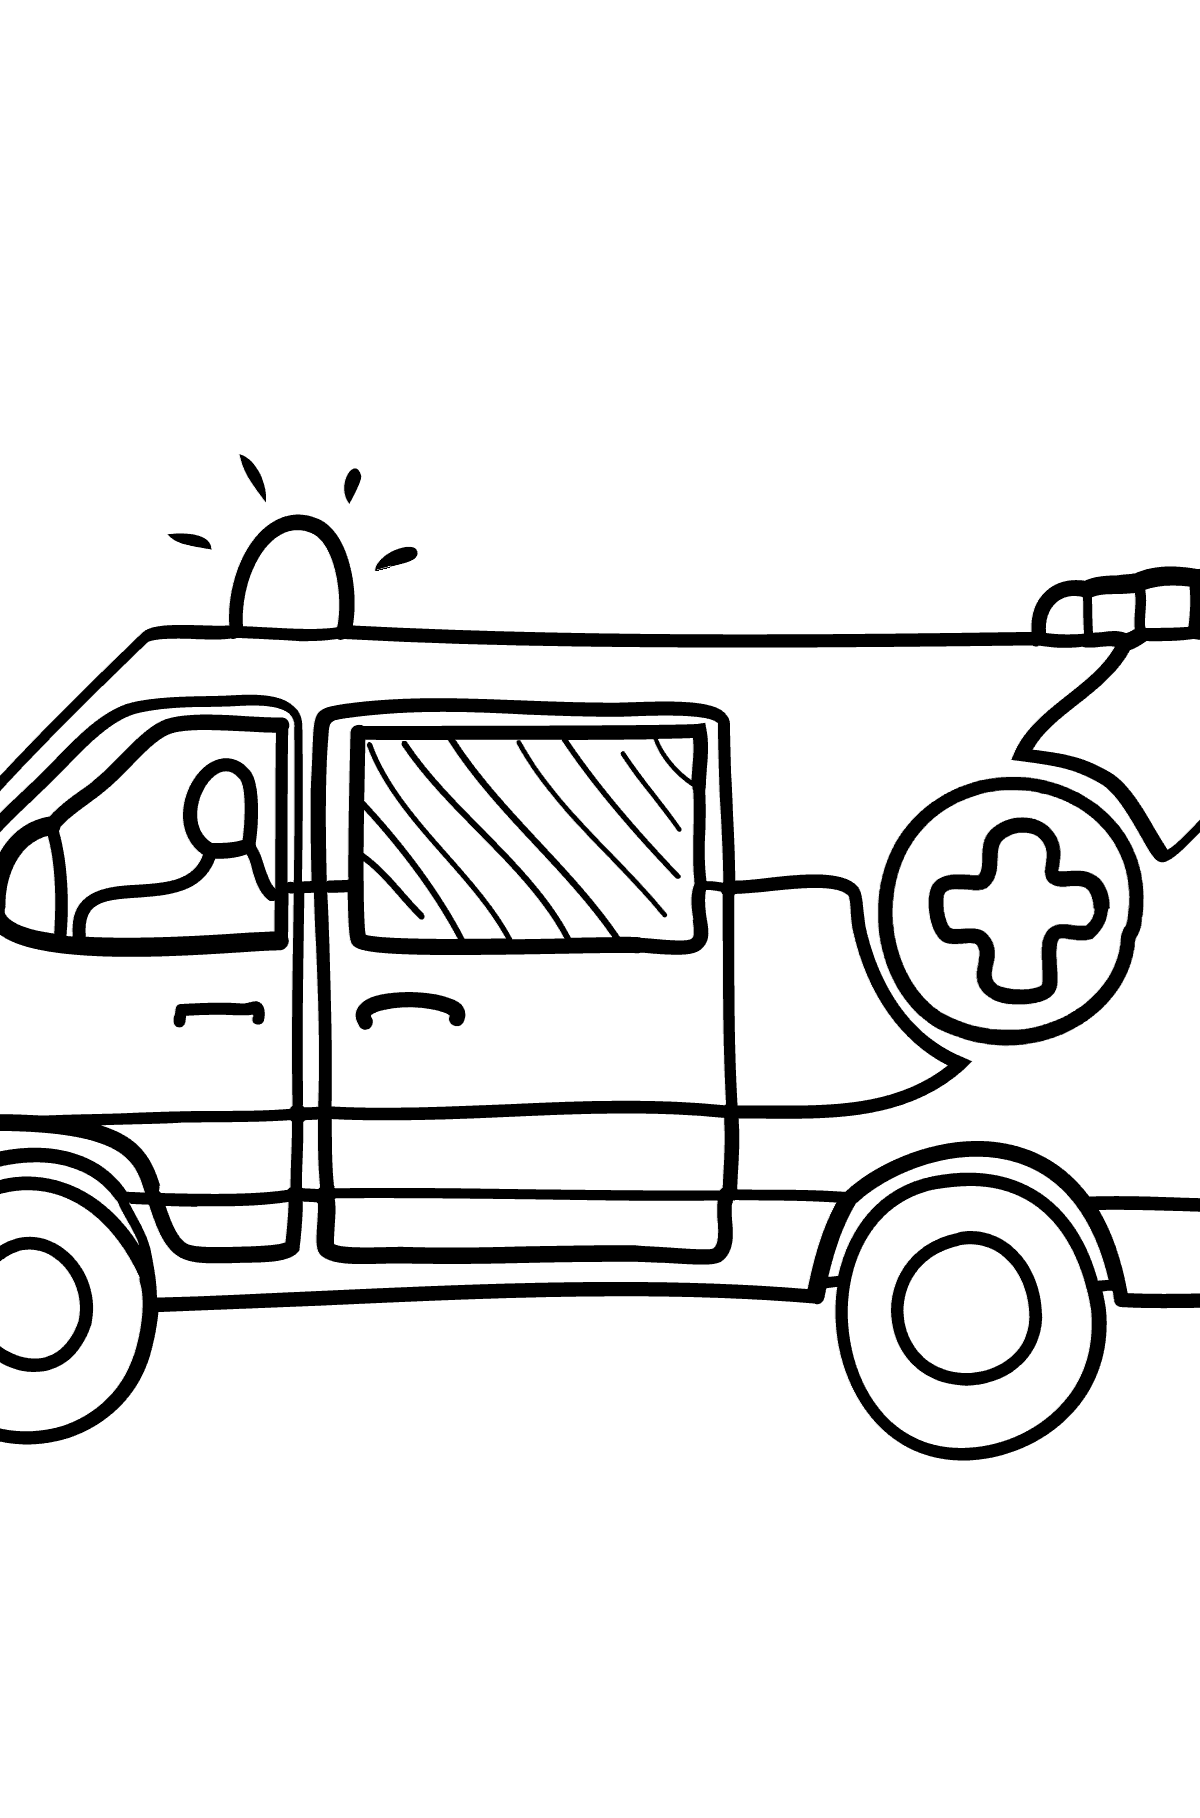 Disegni da colorare - Un'ambulanza - Disegni da colorare per bambini